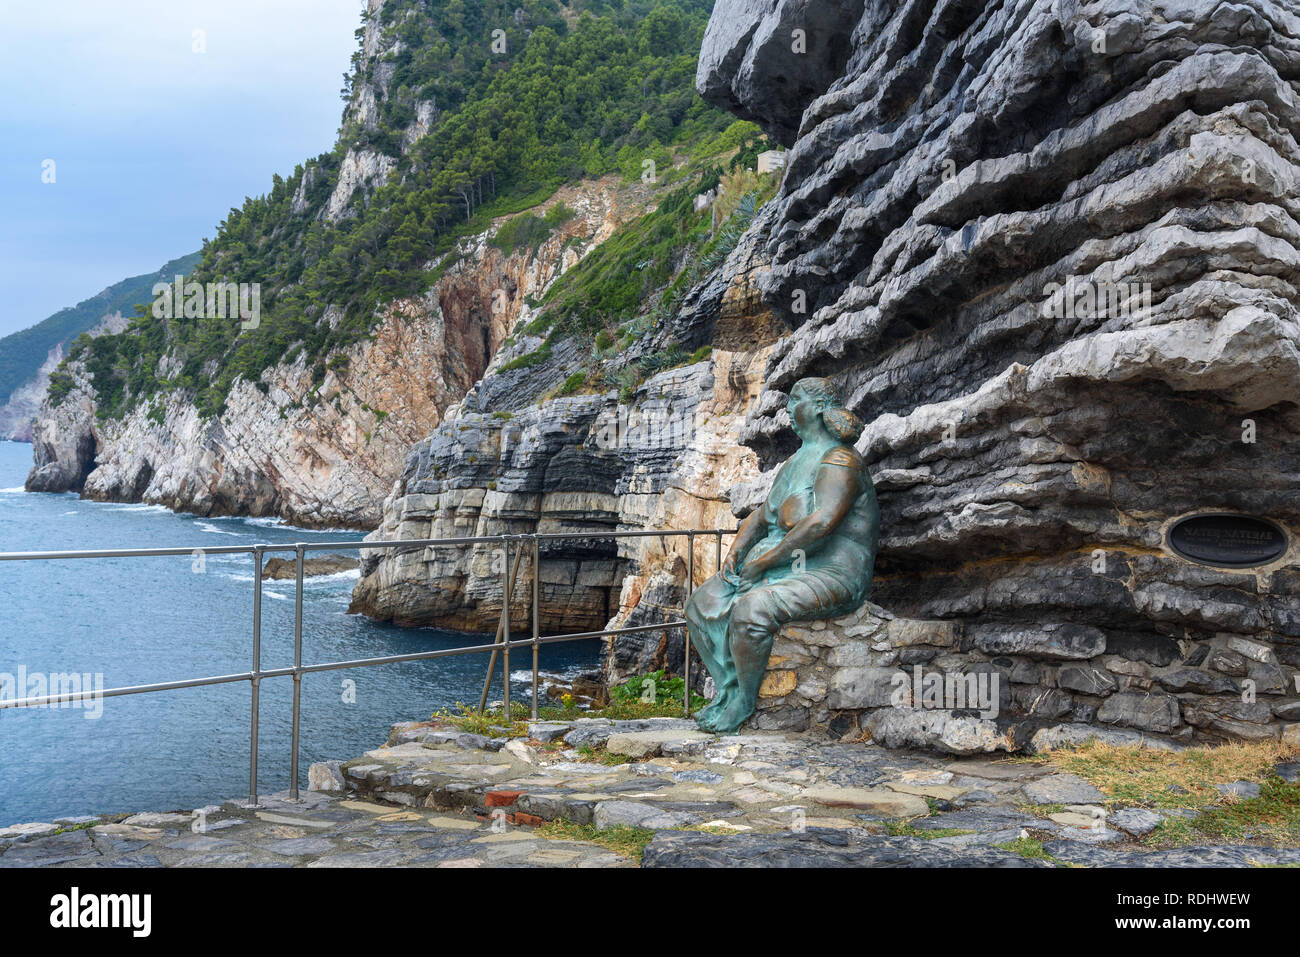 Porto Venere, Italie - 11 octobre 2018 : Statue de mater Naturae, Mère Nature assis sur les rochers de la côte de Portovenere ou sur la ville de Porto Venere Liguri Banque D'Images